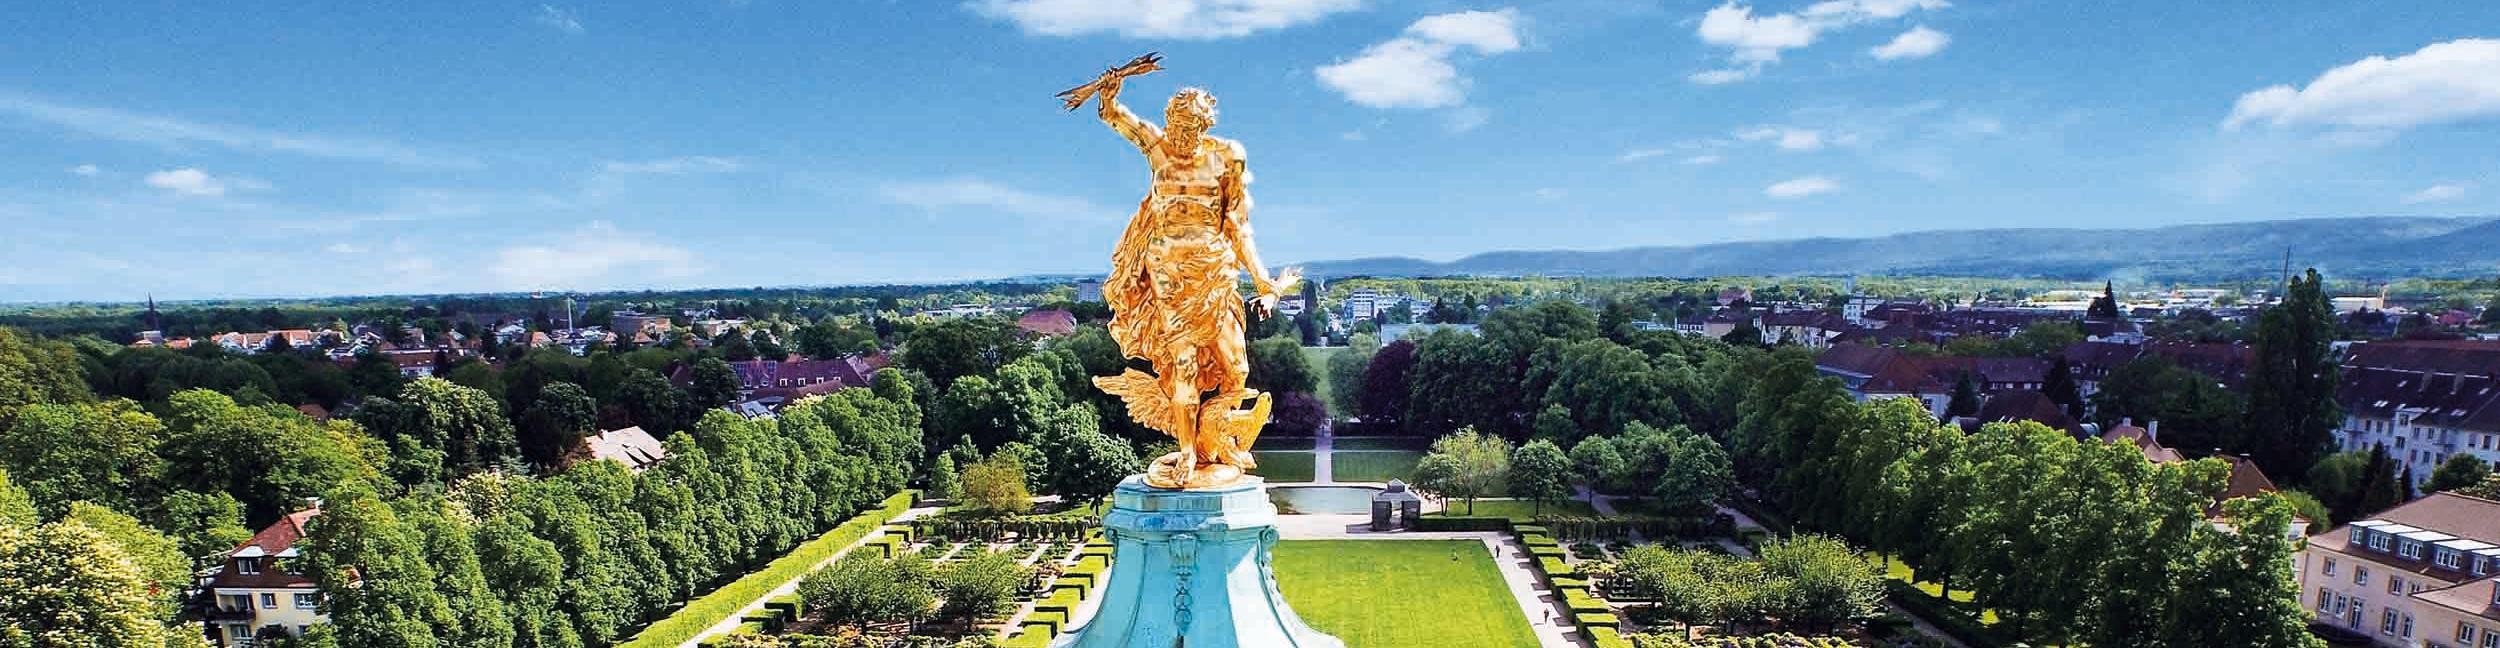 Golden man castle Rastatt